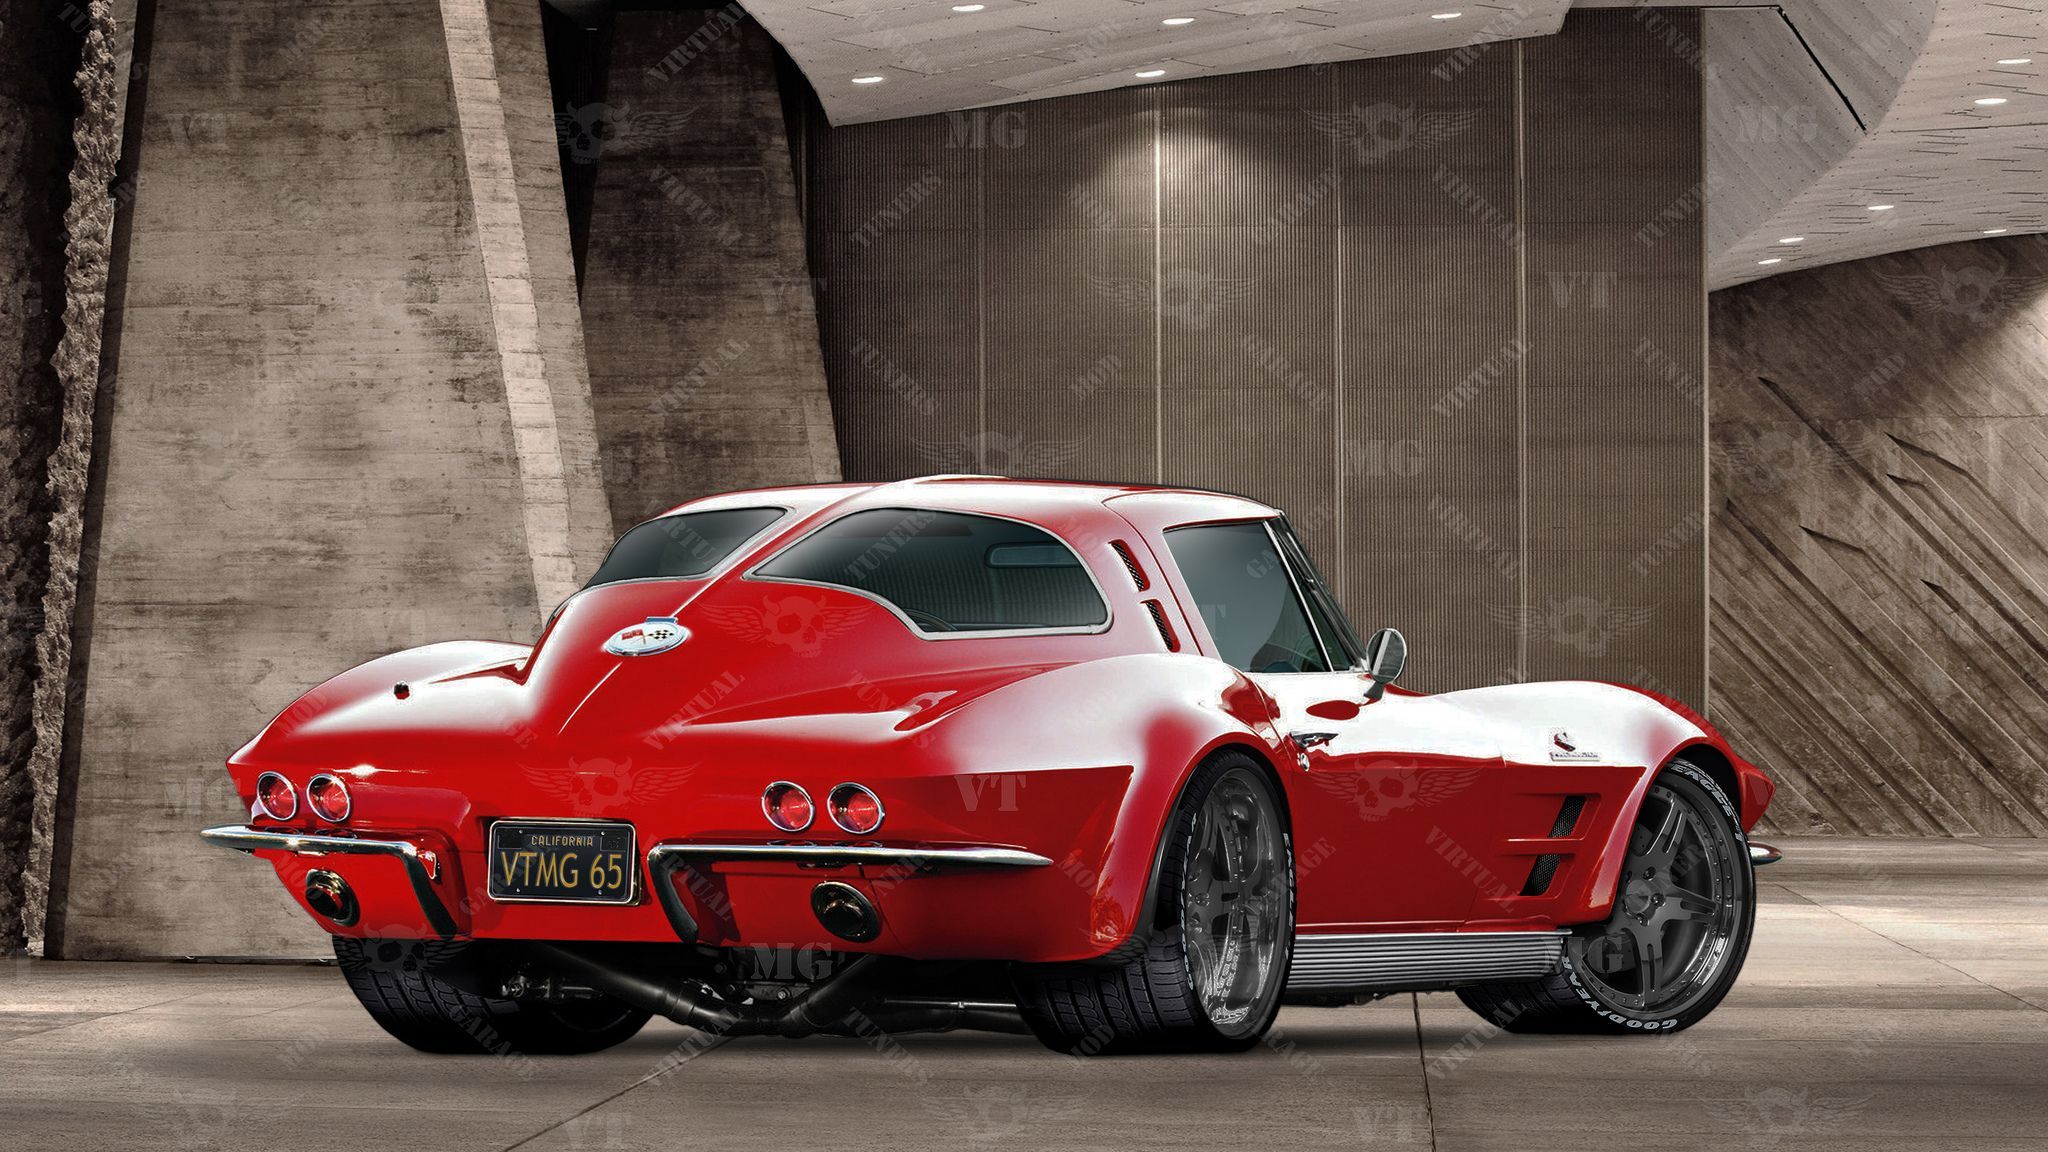 Chevy Corvette Split Window Coupe War Horse. Chevy corvette, Cool sports cars, Corvette